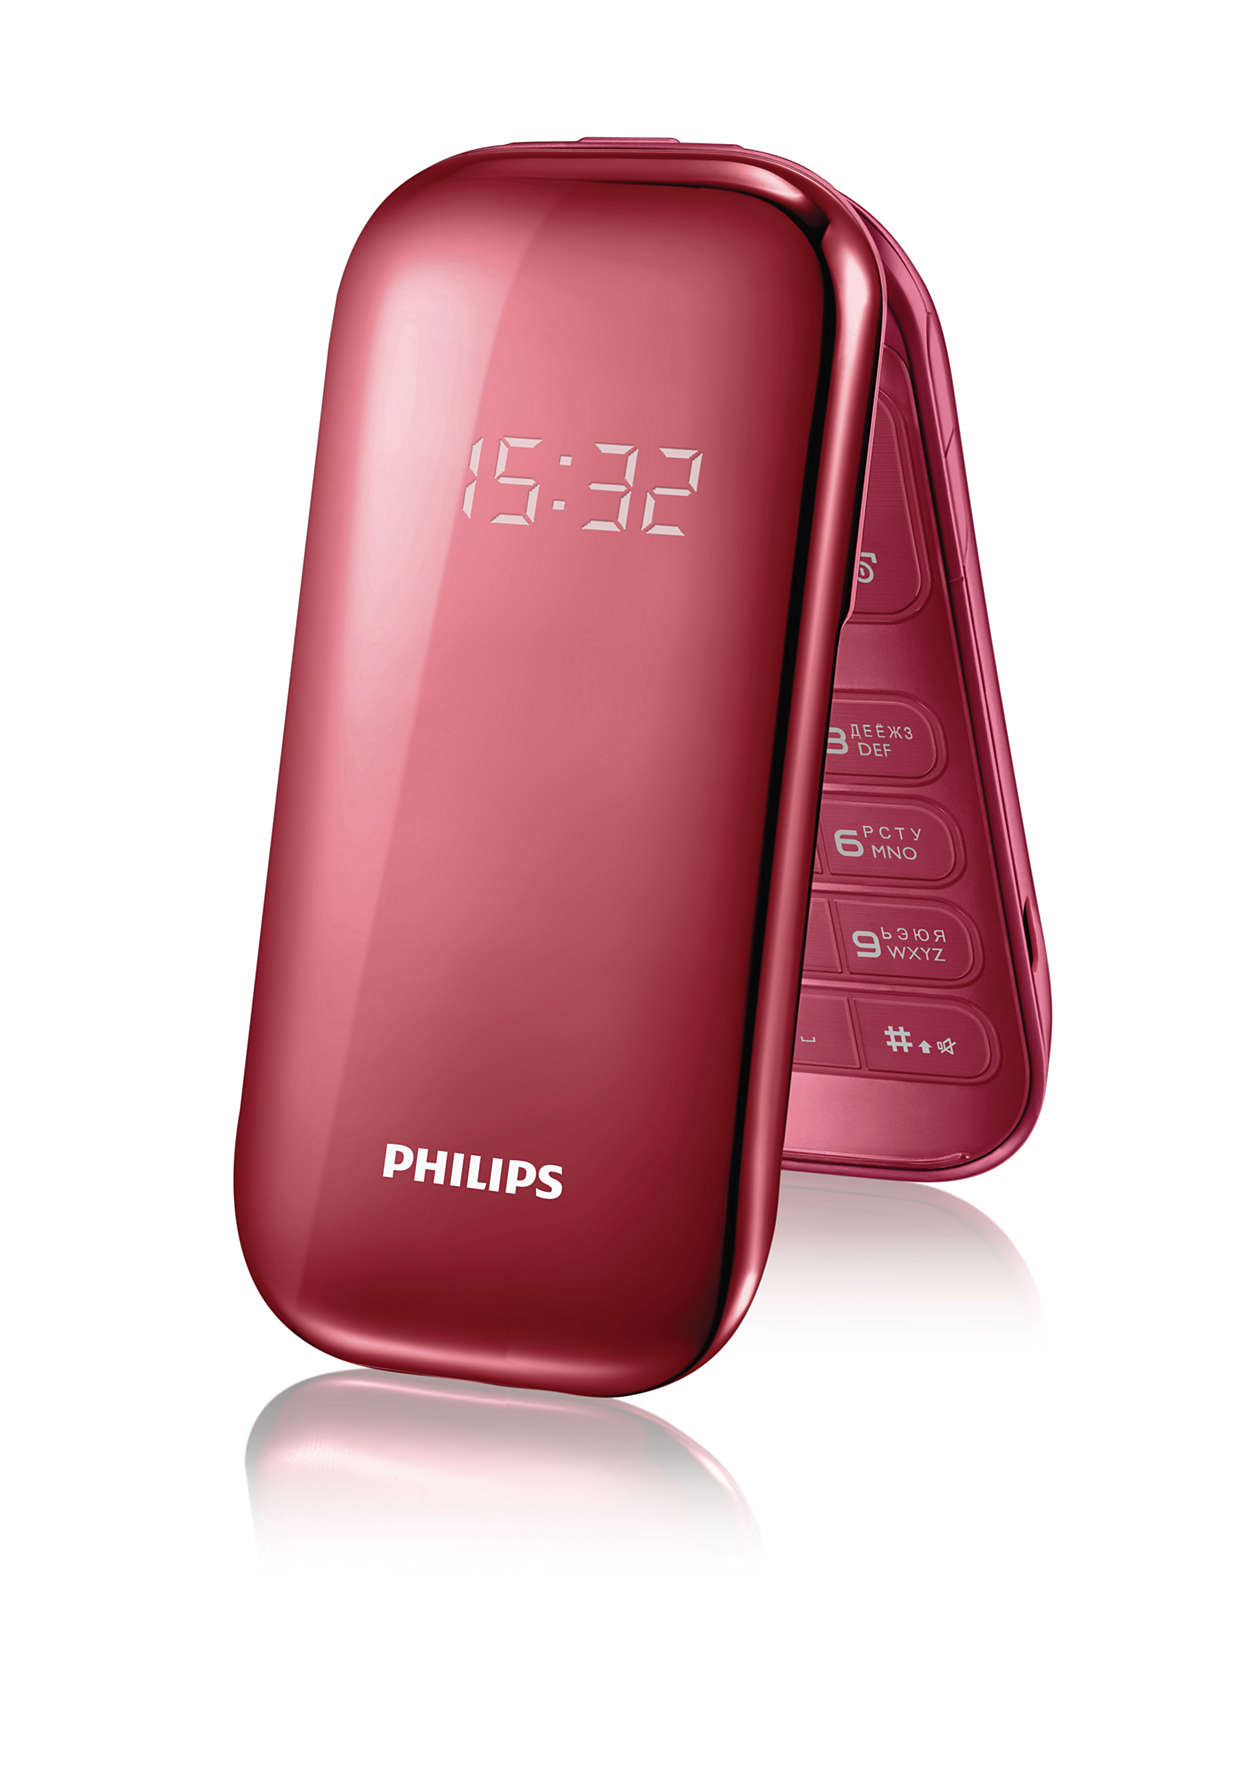 Кнопочная раскладушка филипс. Philips e320 красный. Мобильный телефон Philips e320. Кнопочный сотовый Филипс раскладушка. Philips e225.